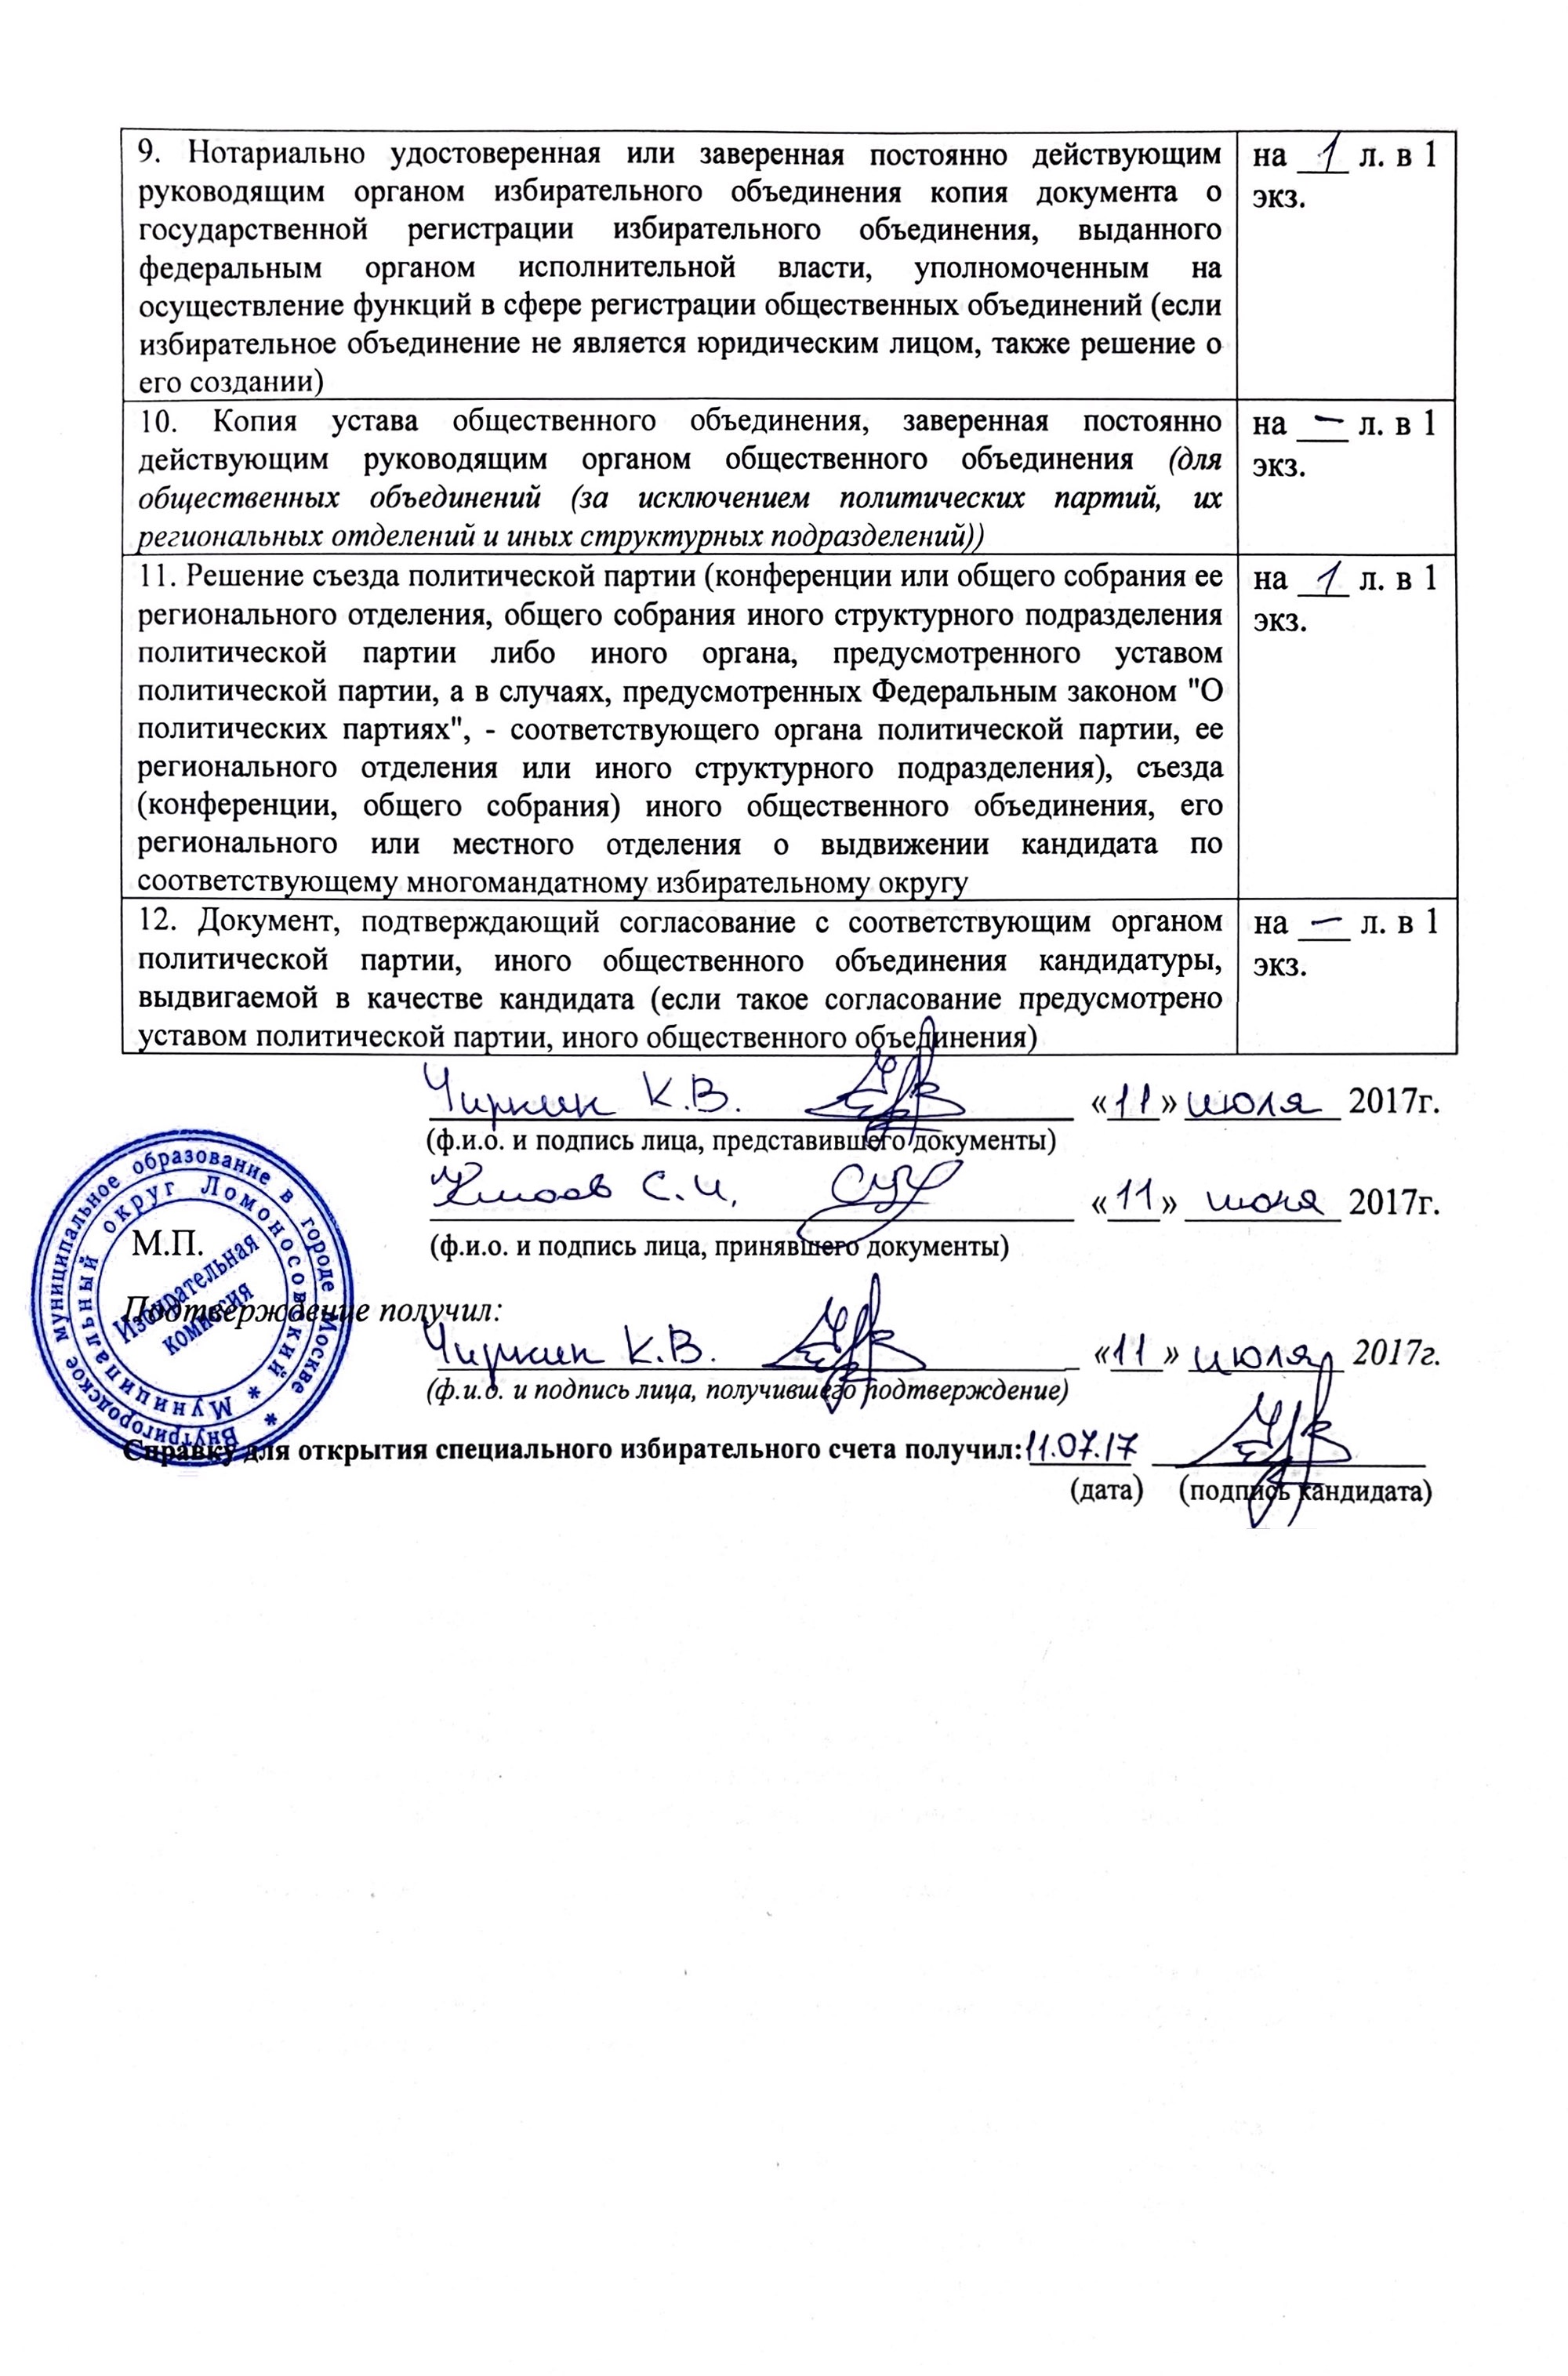 Это подтверждение от ТИК Ломоносовского округа, что мои документы приняли. Список документов внушительный